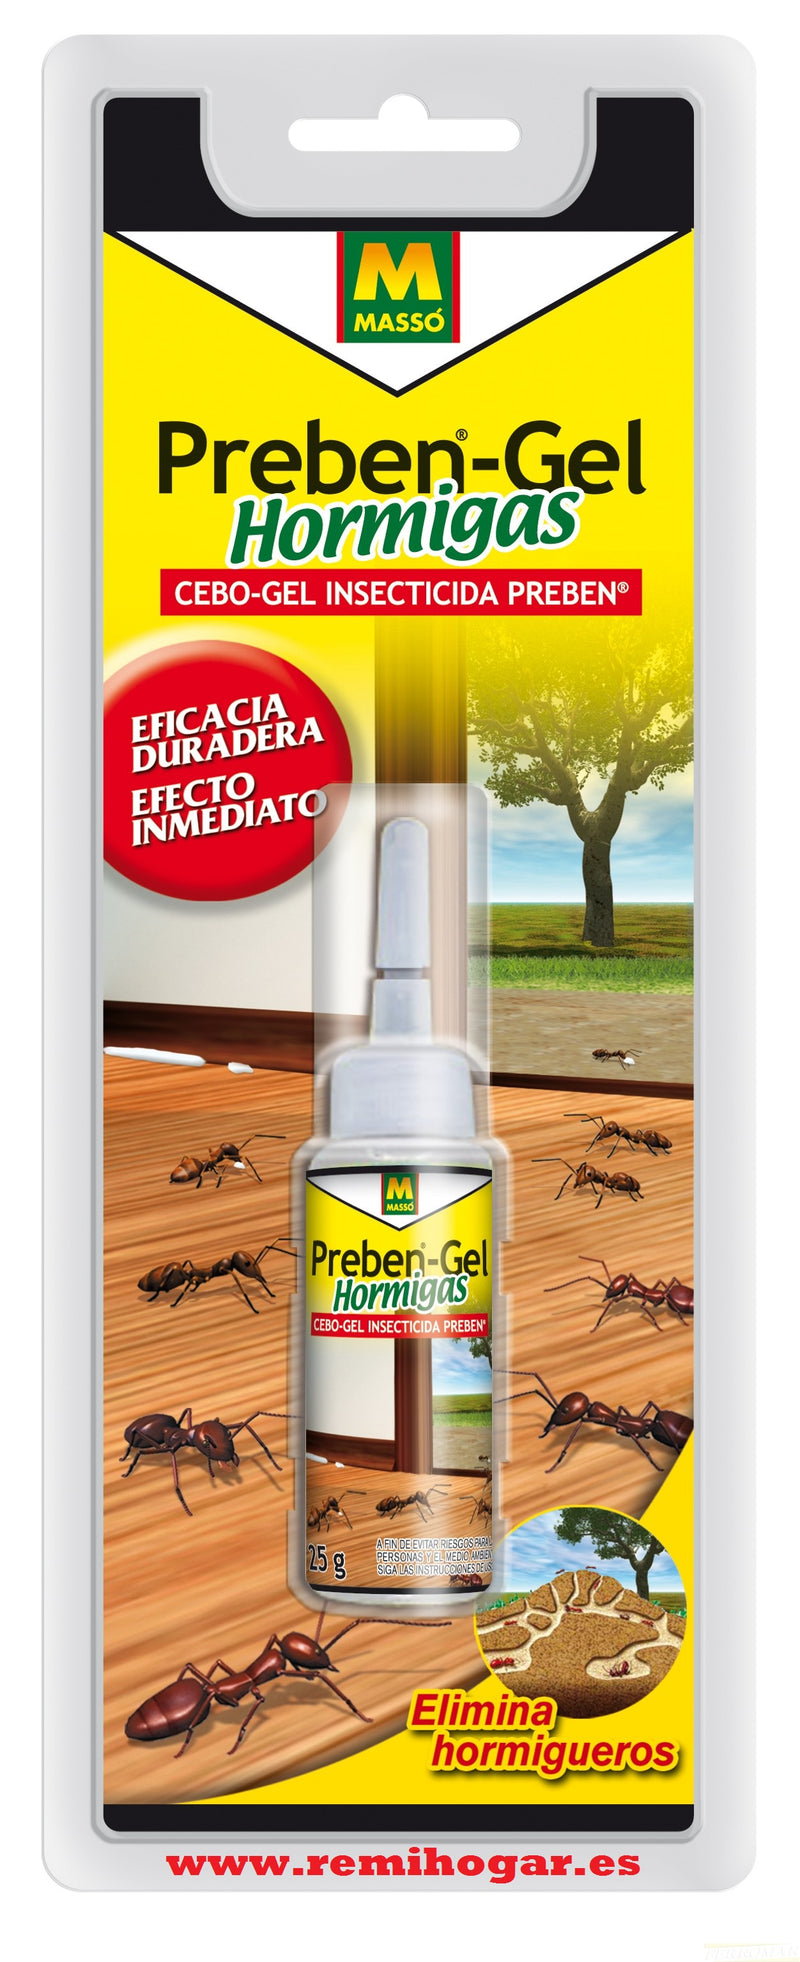 Preben Gel Anti Hormigas - Masso